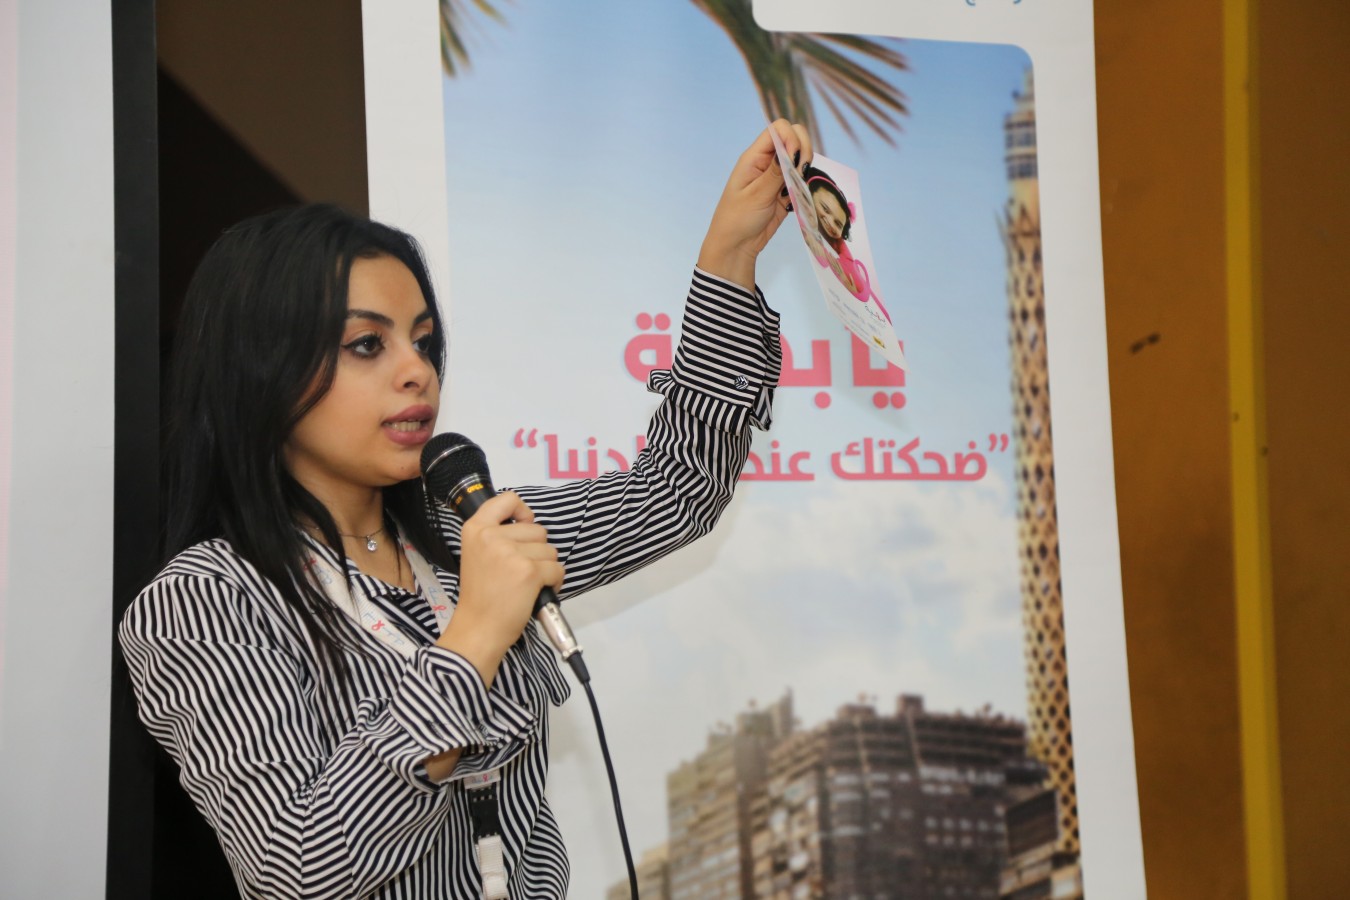 مؤسسة بهية هي مؤسسة تقوم بعلاج المرضى من سرطان الثدي بالمجان، وإلى جانب ذلك فإنها تقوم بتقديم ندوات التوعية في مختلف قرى ومحافظات مصر